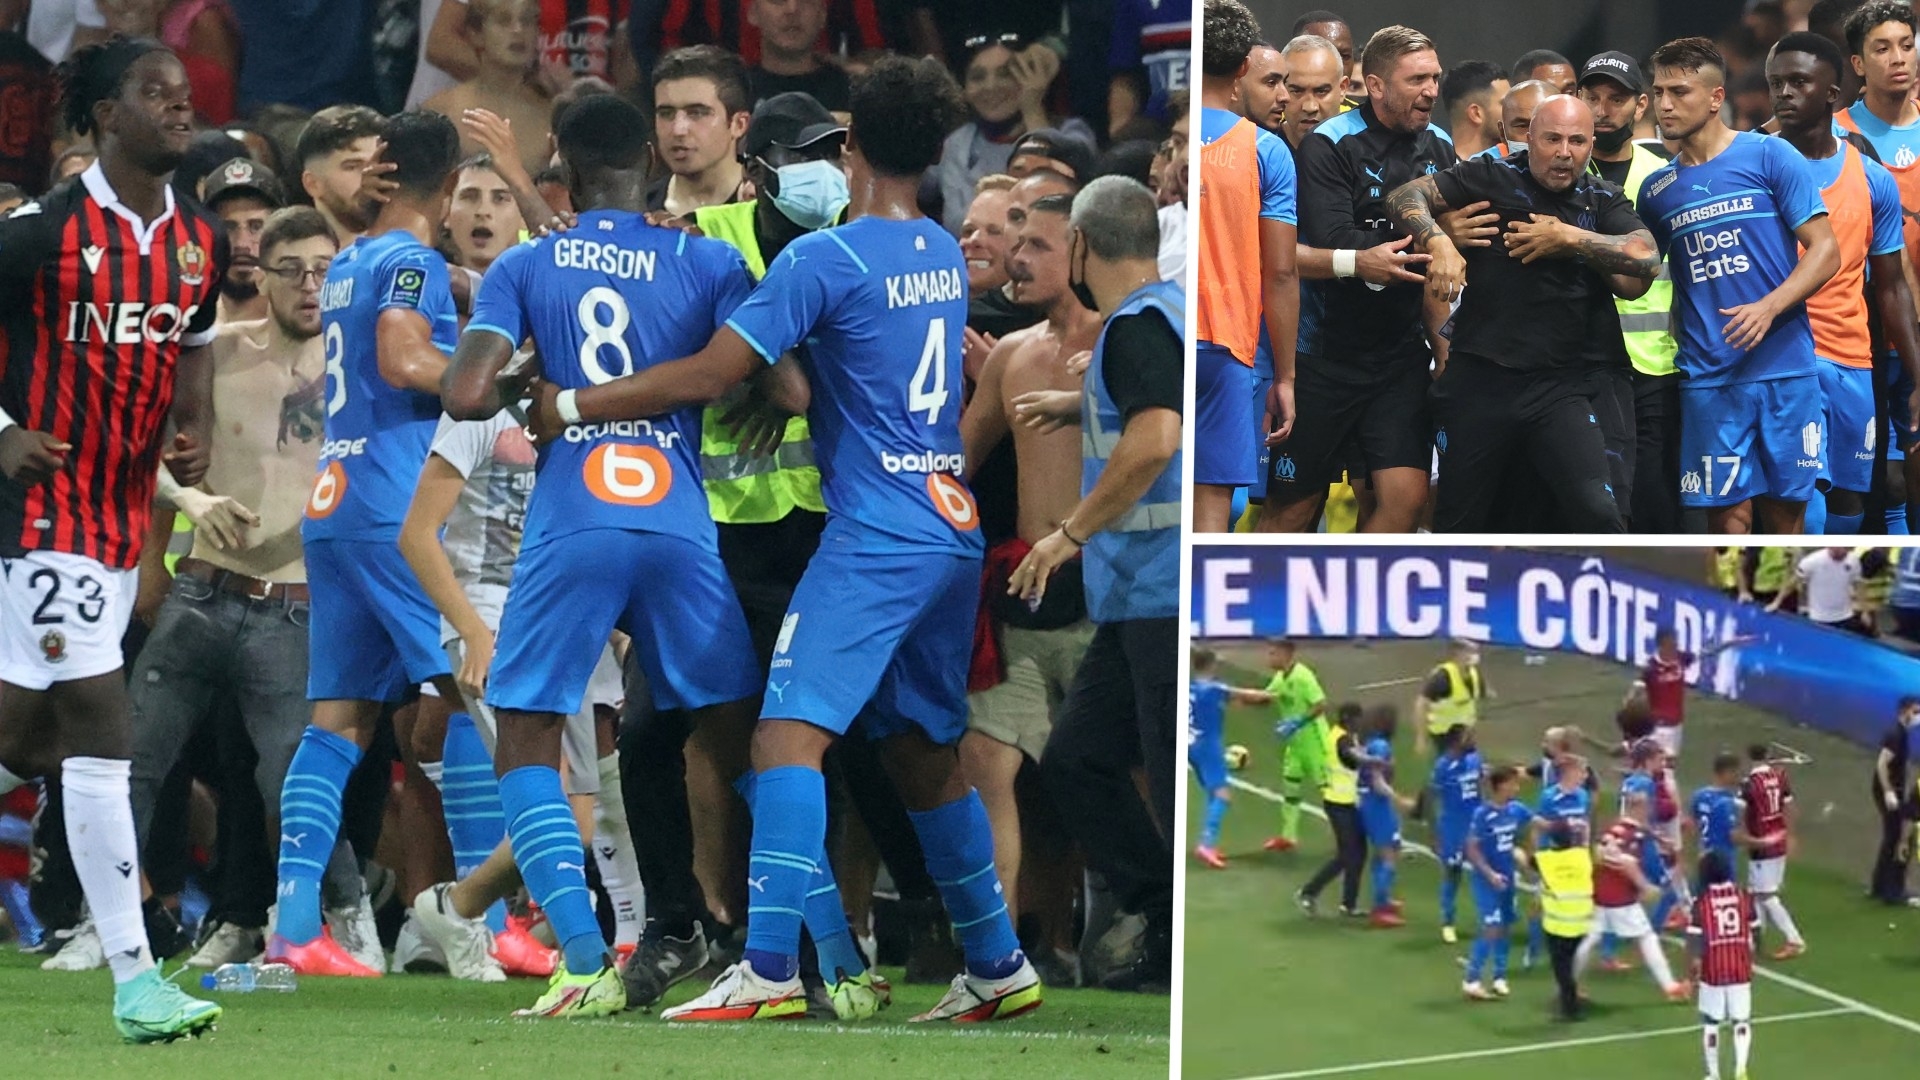 ニースとマルセイユの一戦でファンが乱闘騒ぎの暴徒化 試合途中で打ち切りに Goal Com